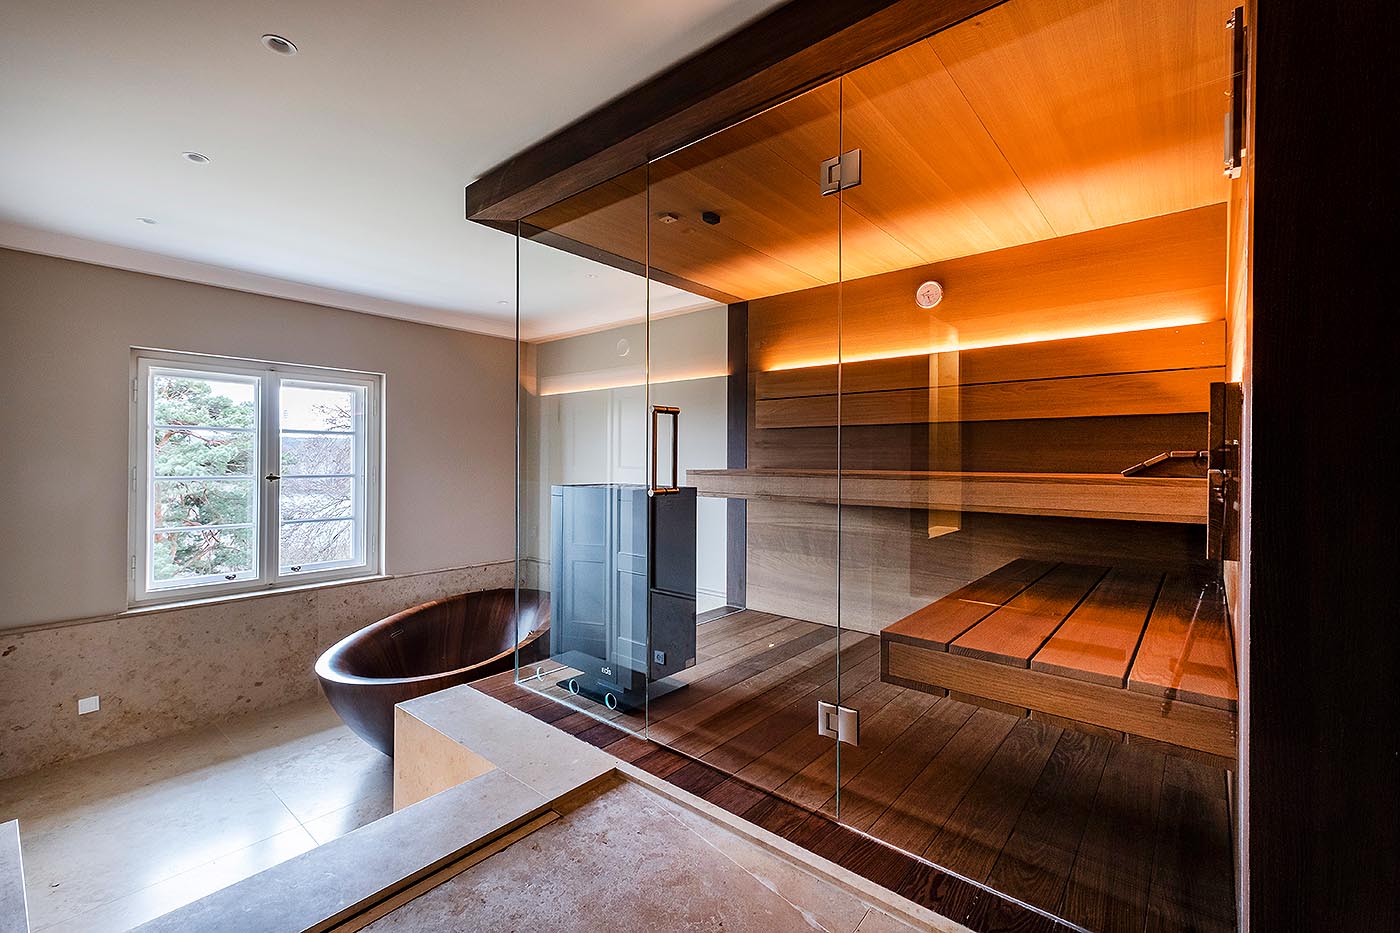 Premium Design Sauna Nimbus als Ecksauna mit zwei großen Glaselementen: moderne Sauna für Zuhause im Bad in Thermo-Eiche mit schwebenden Bänken